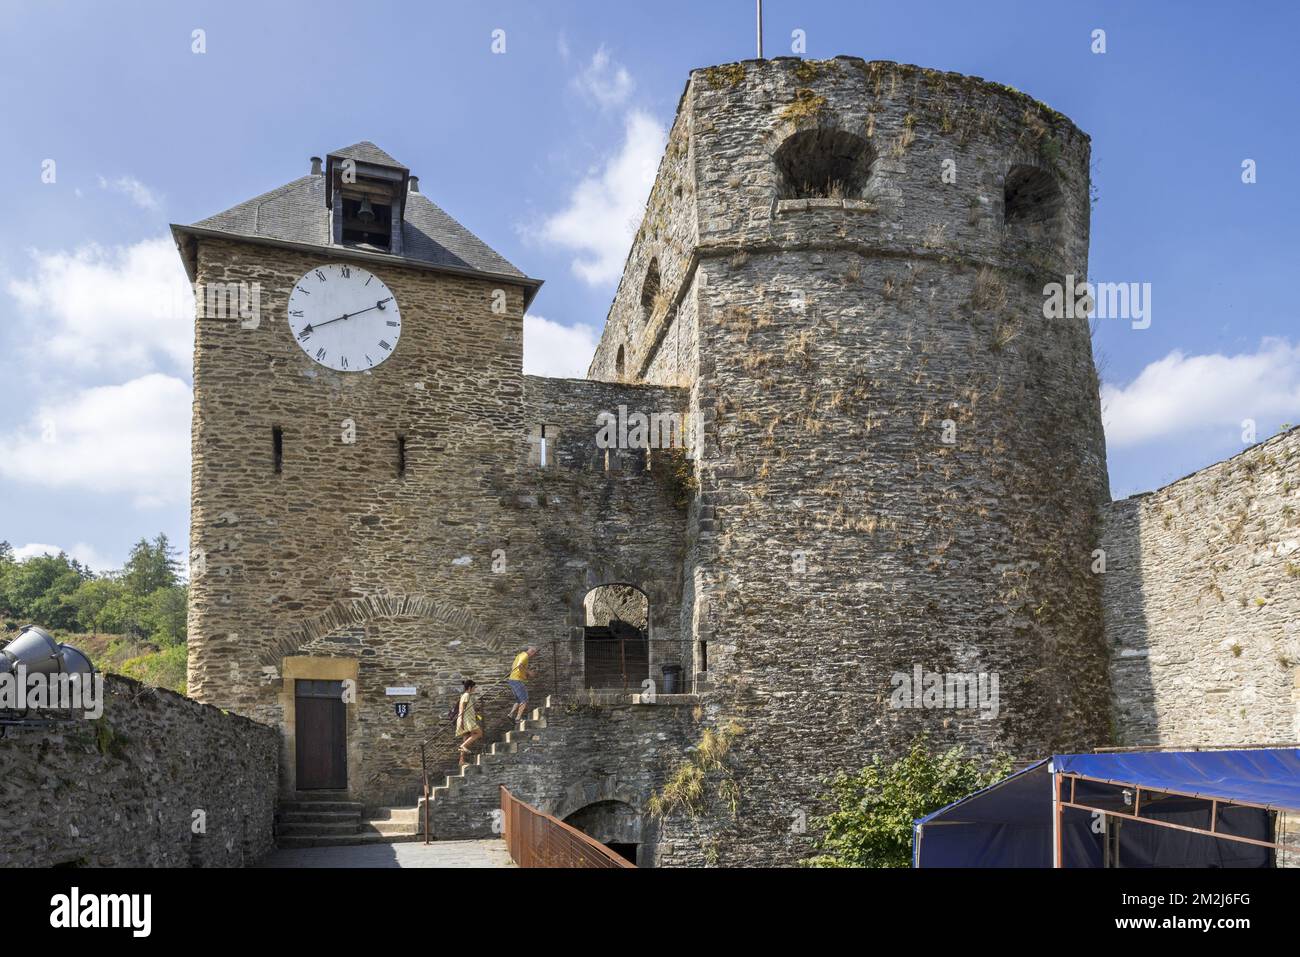 Touristen besuchen das mittelalterliche Schloss Château de Bouillon, Provinz Luxemburg, belgische Ardennen, Belgien | Château de Bouillon, Luxemburg, Ardennen, Belgique 24/08/2018 Stockfoto